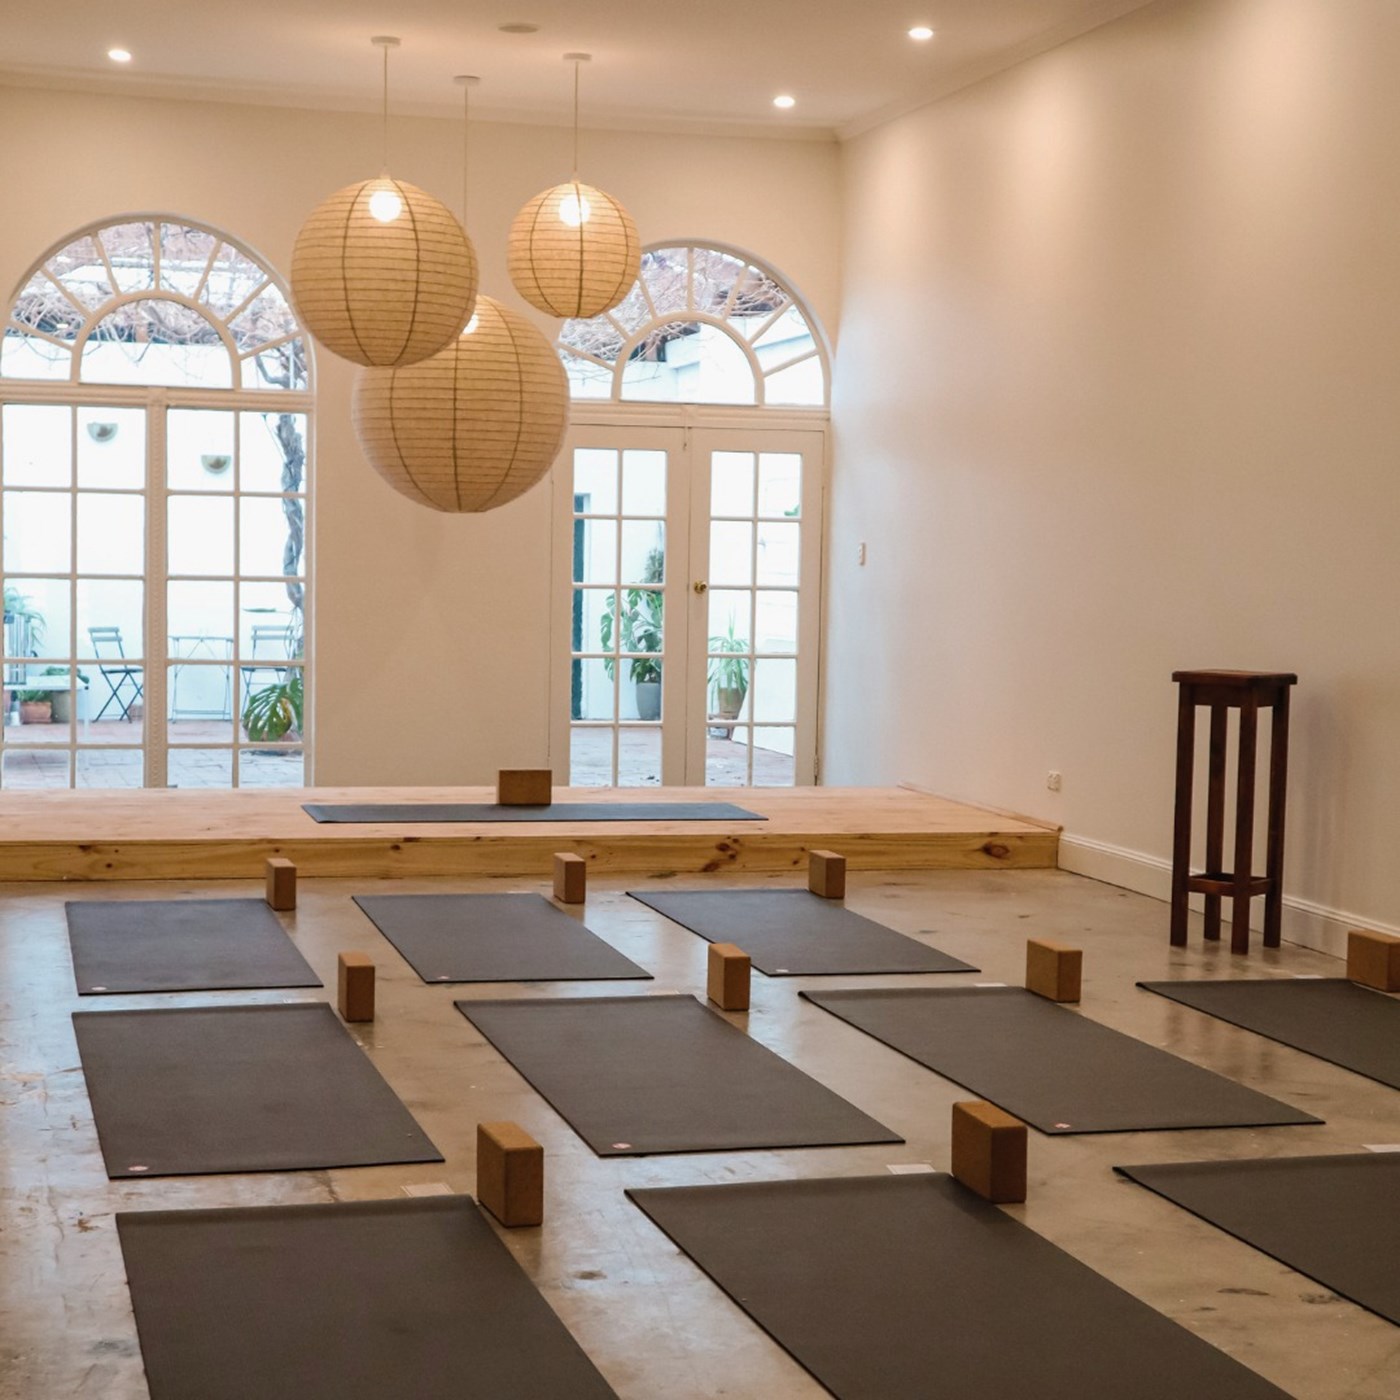 Best Yoga Studios in Adelaide to Release Your Inner Zen